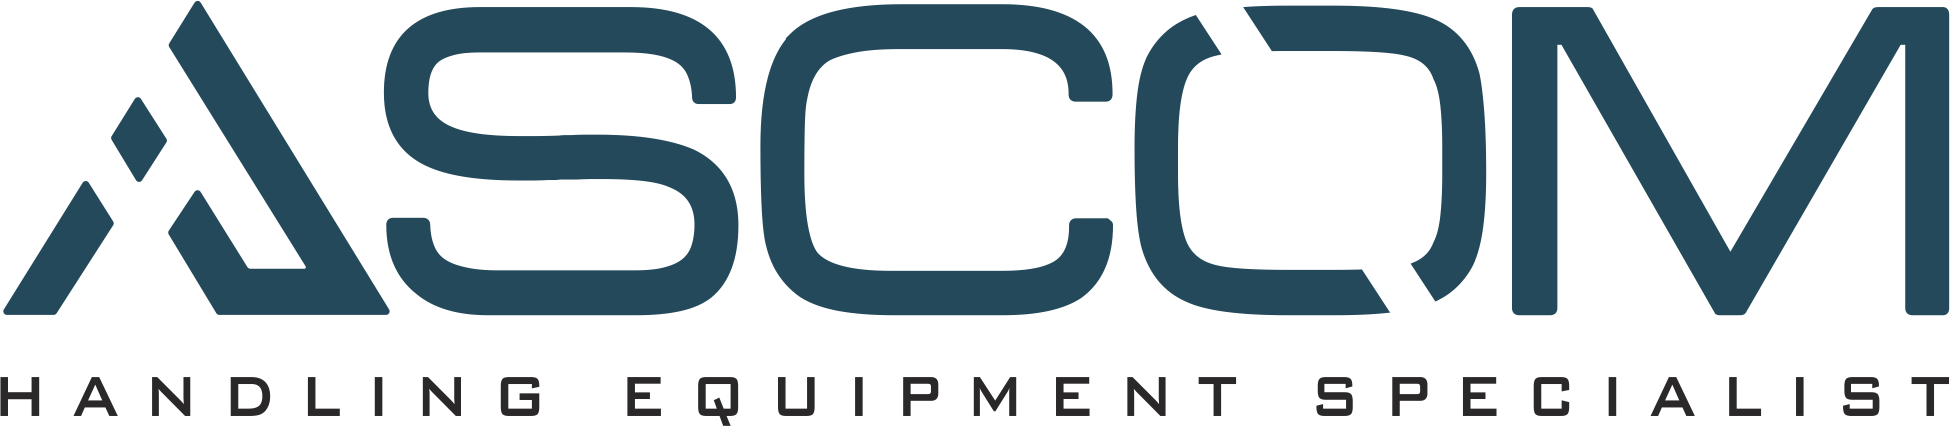 logo Ascom